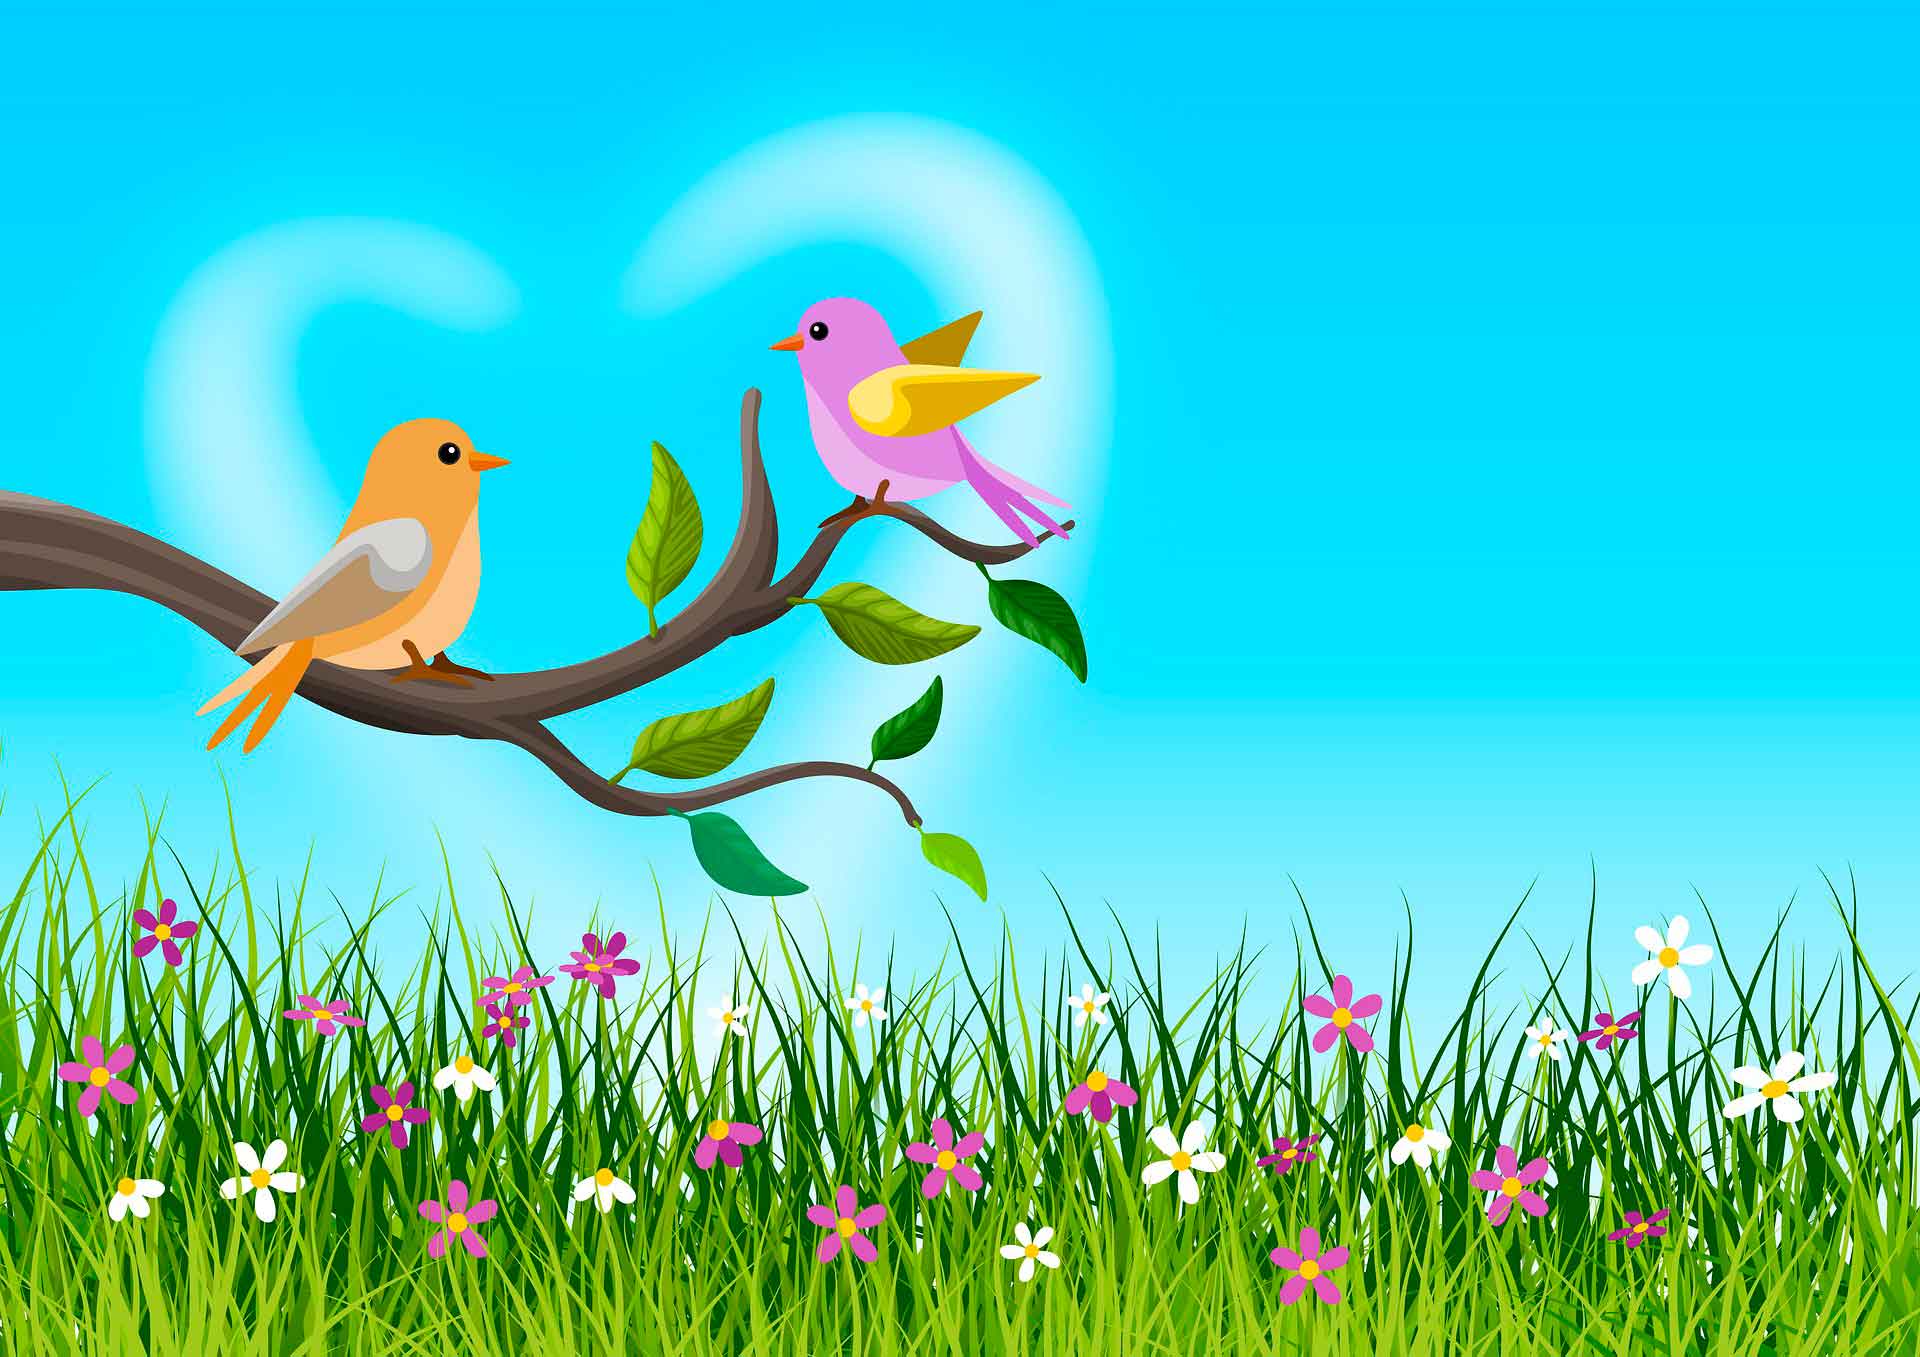 horóscopo signo de cancer - passarinhos - pixabay